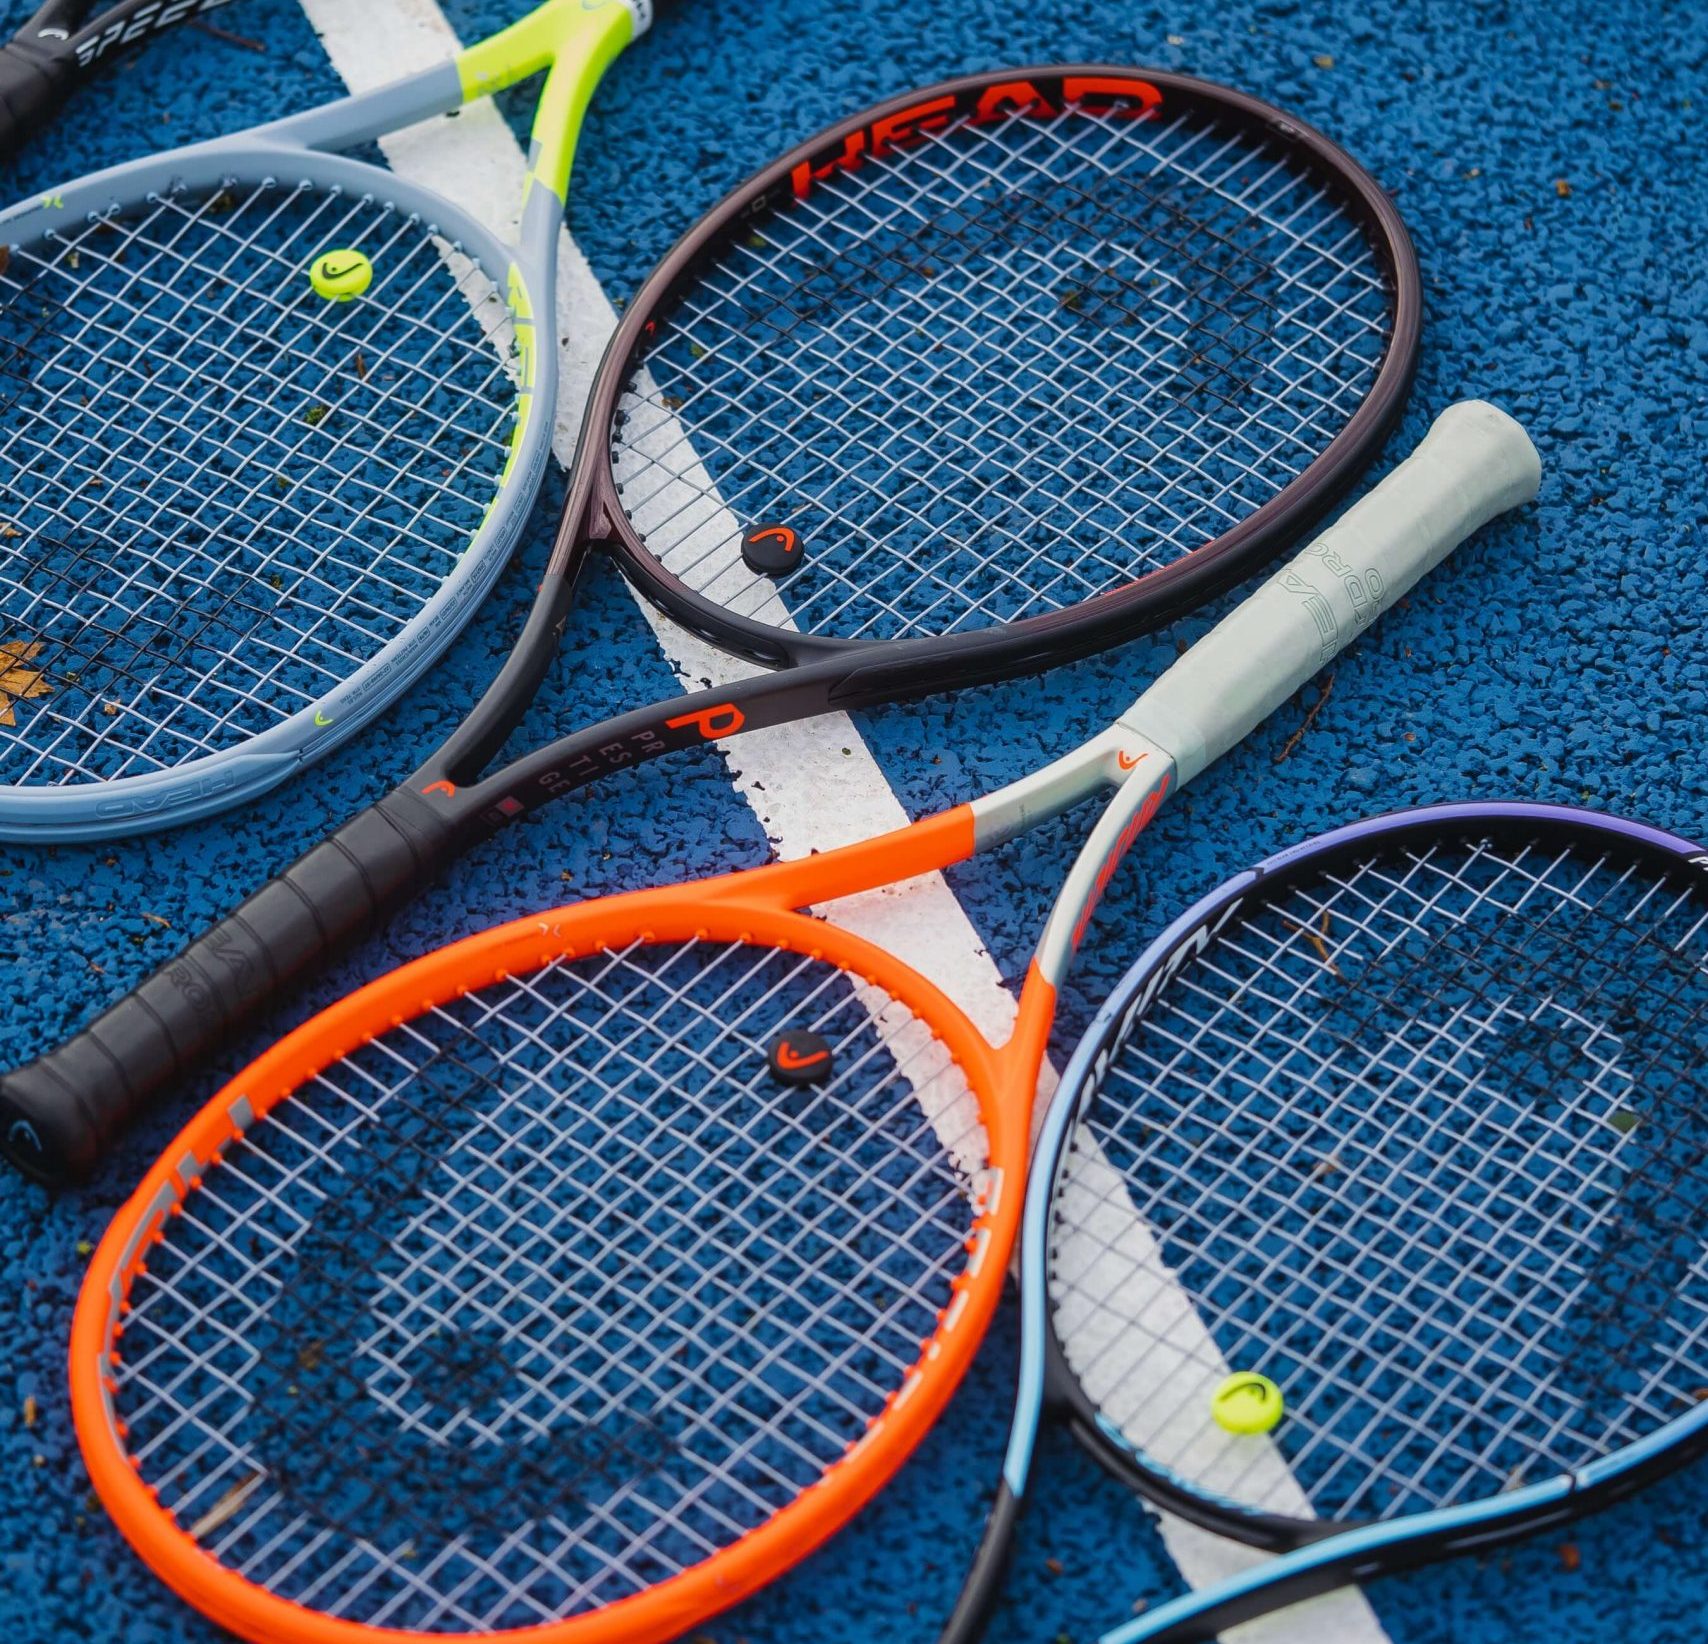 Tênis de quadra: conheça as regras e curiosidades deste esporte